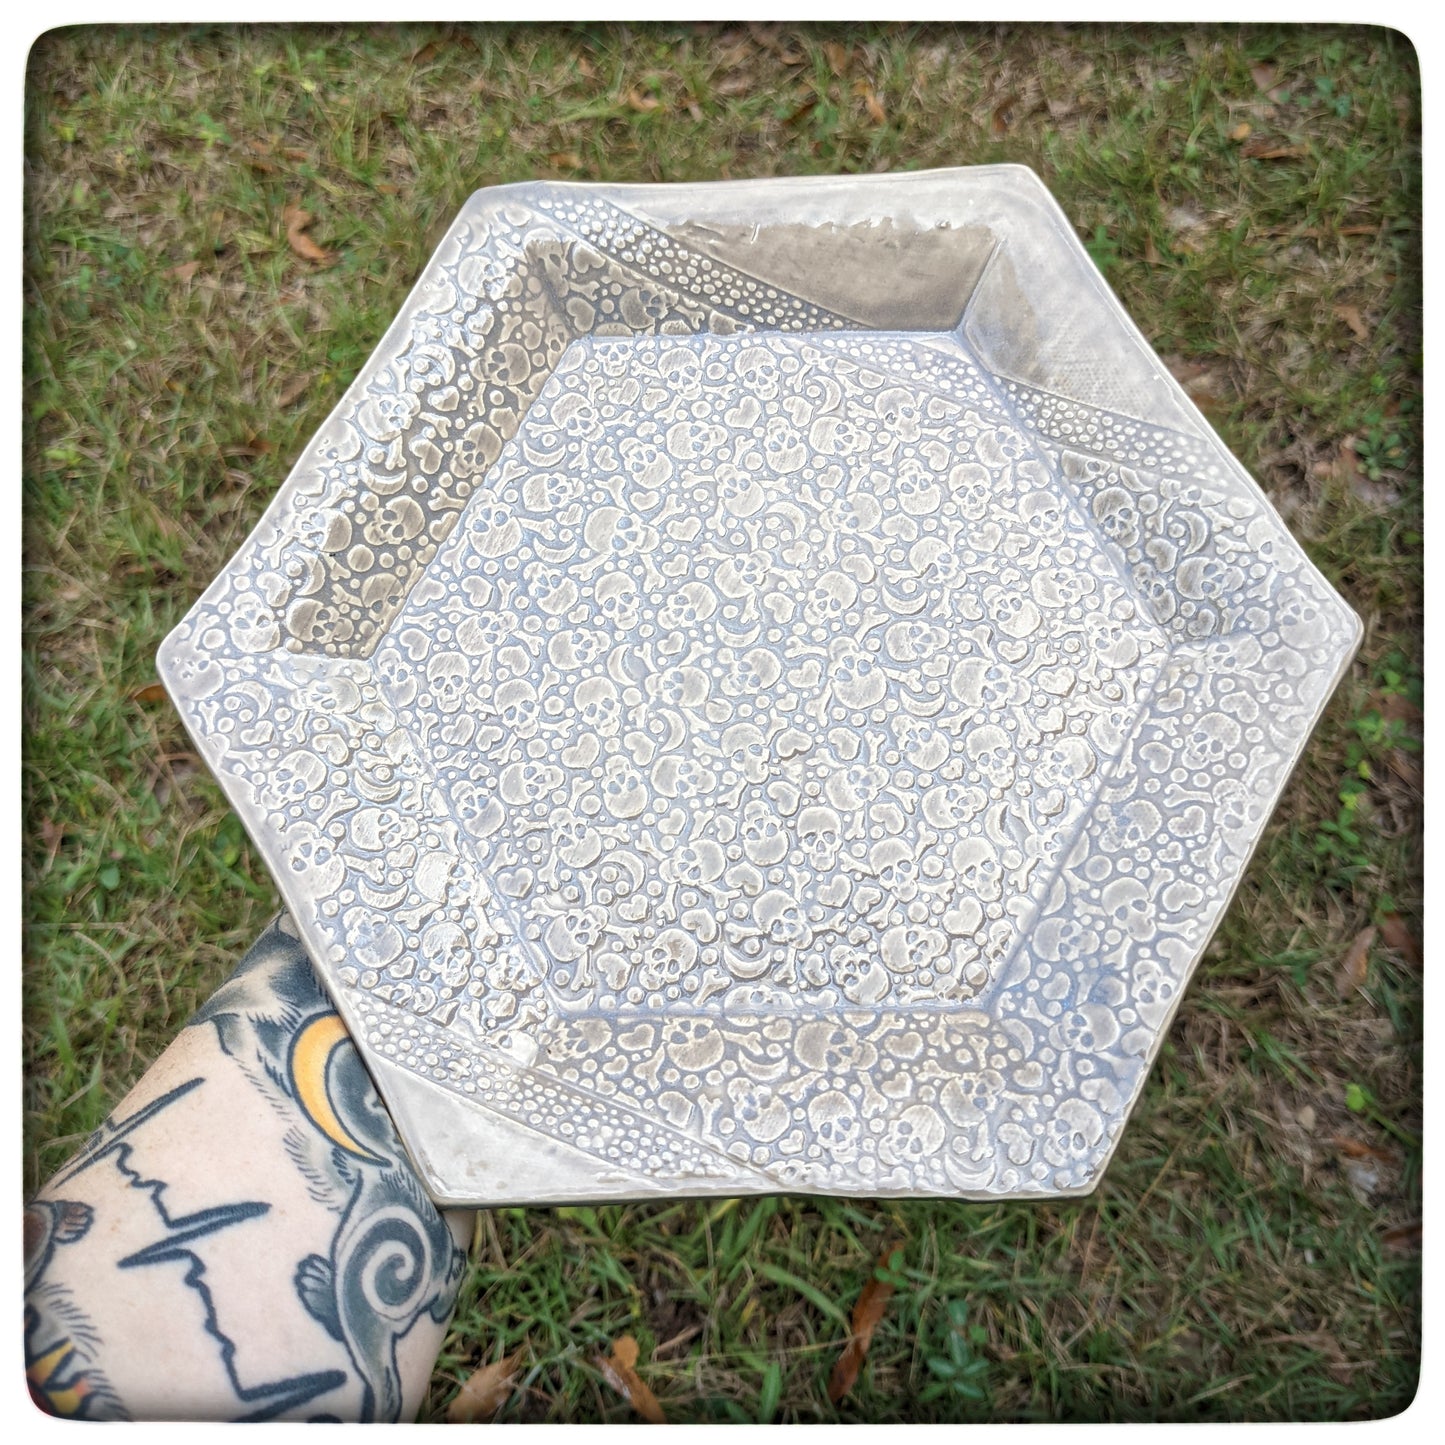 Skull hexagon dish (8.5 inch)